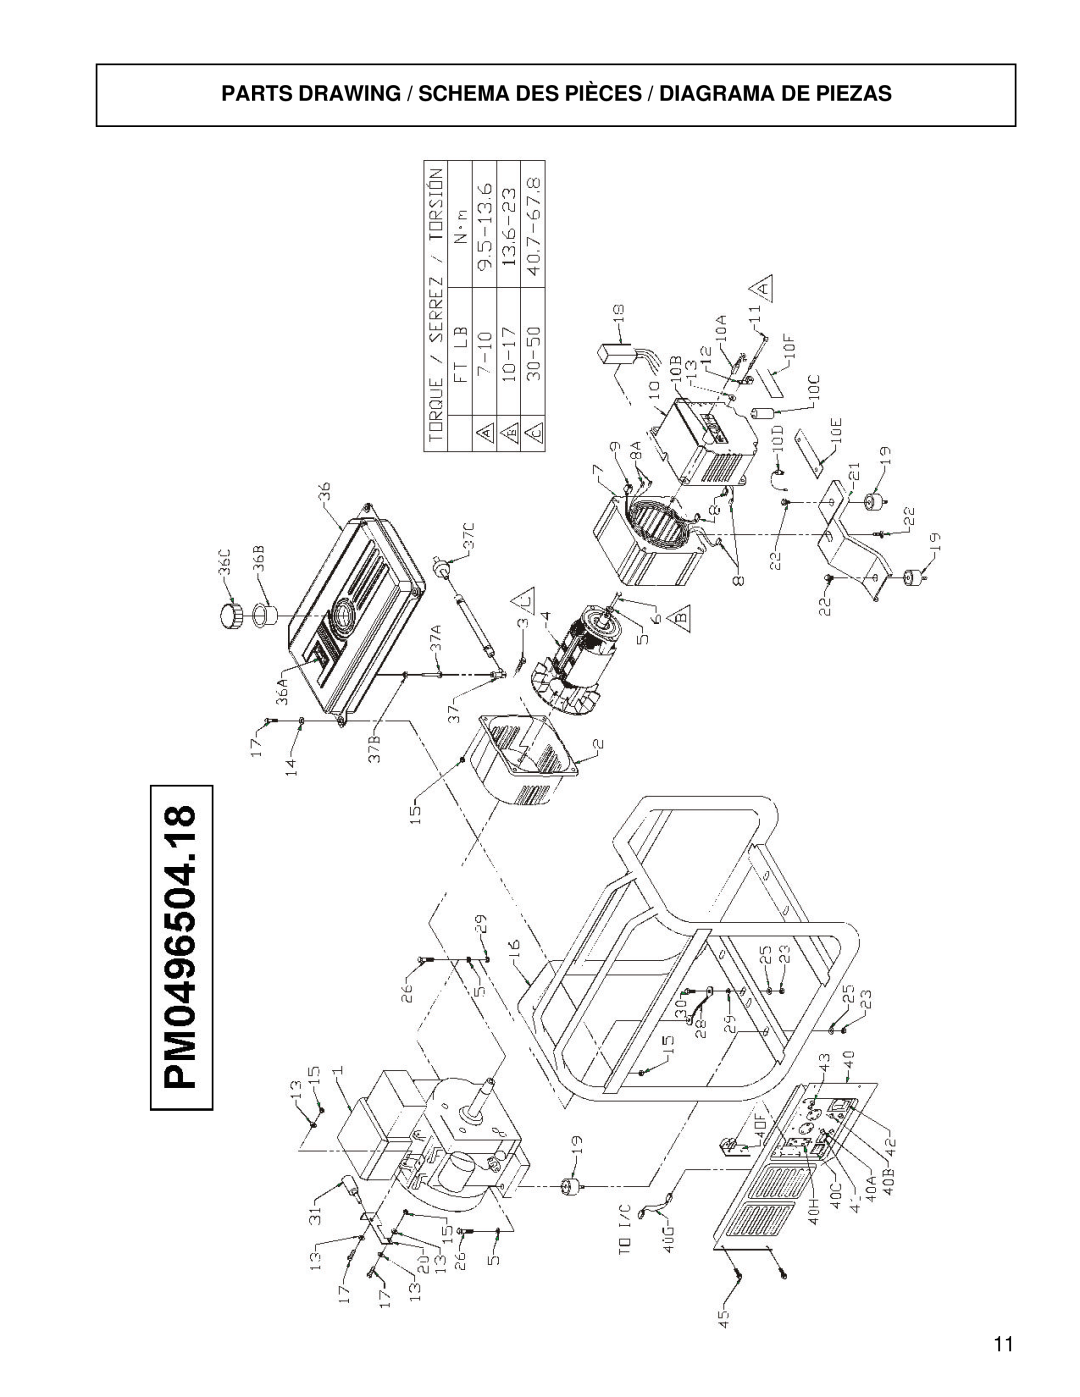 Powermate PM0496504.18 manual Parts Drawing / Schema Des Pièces / Diagrama De Piezas 